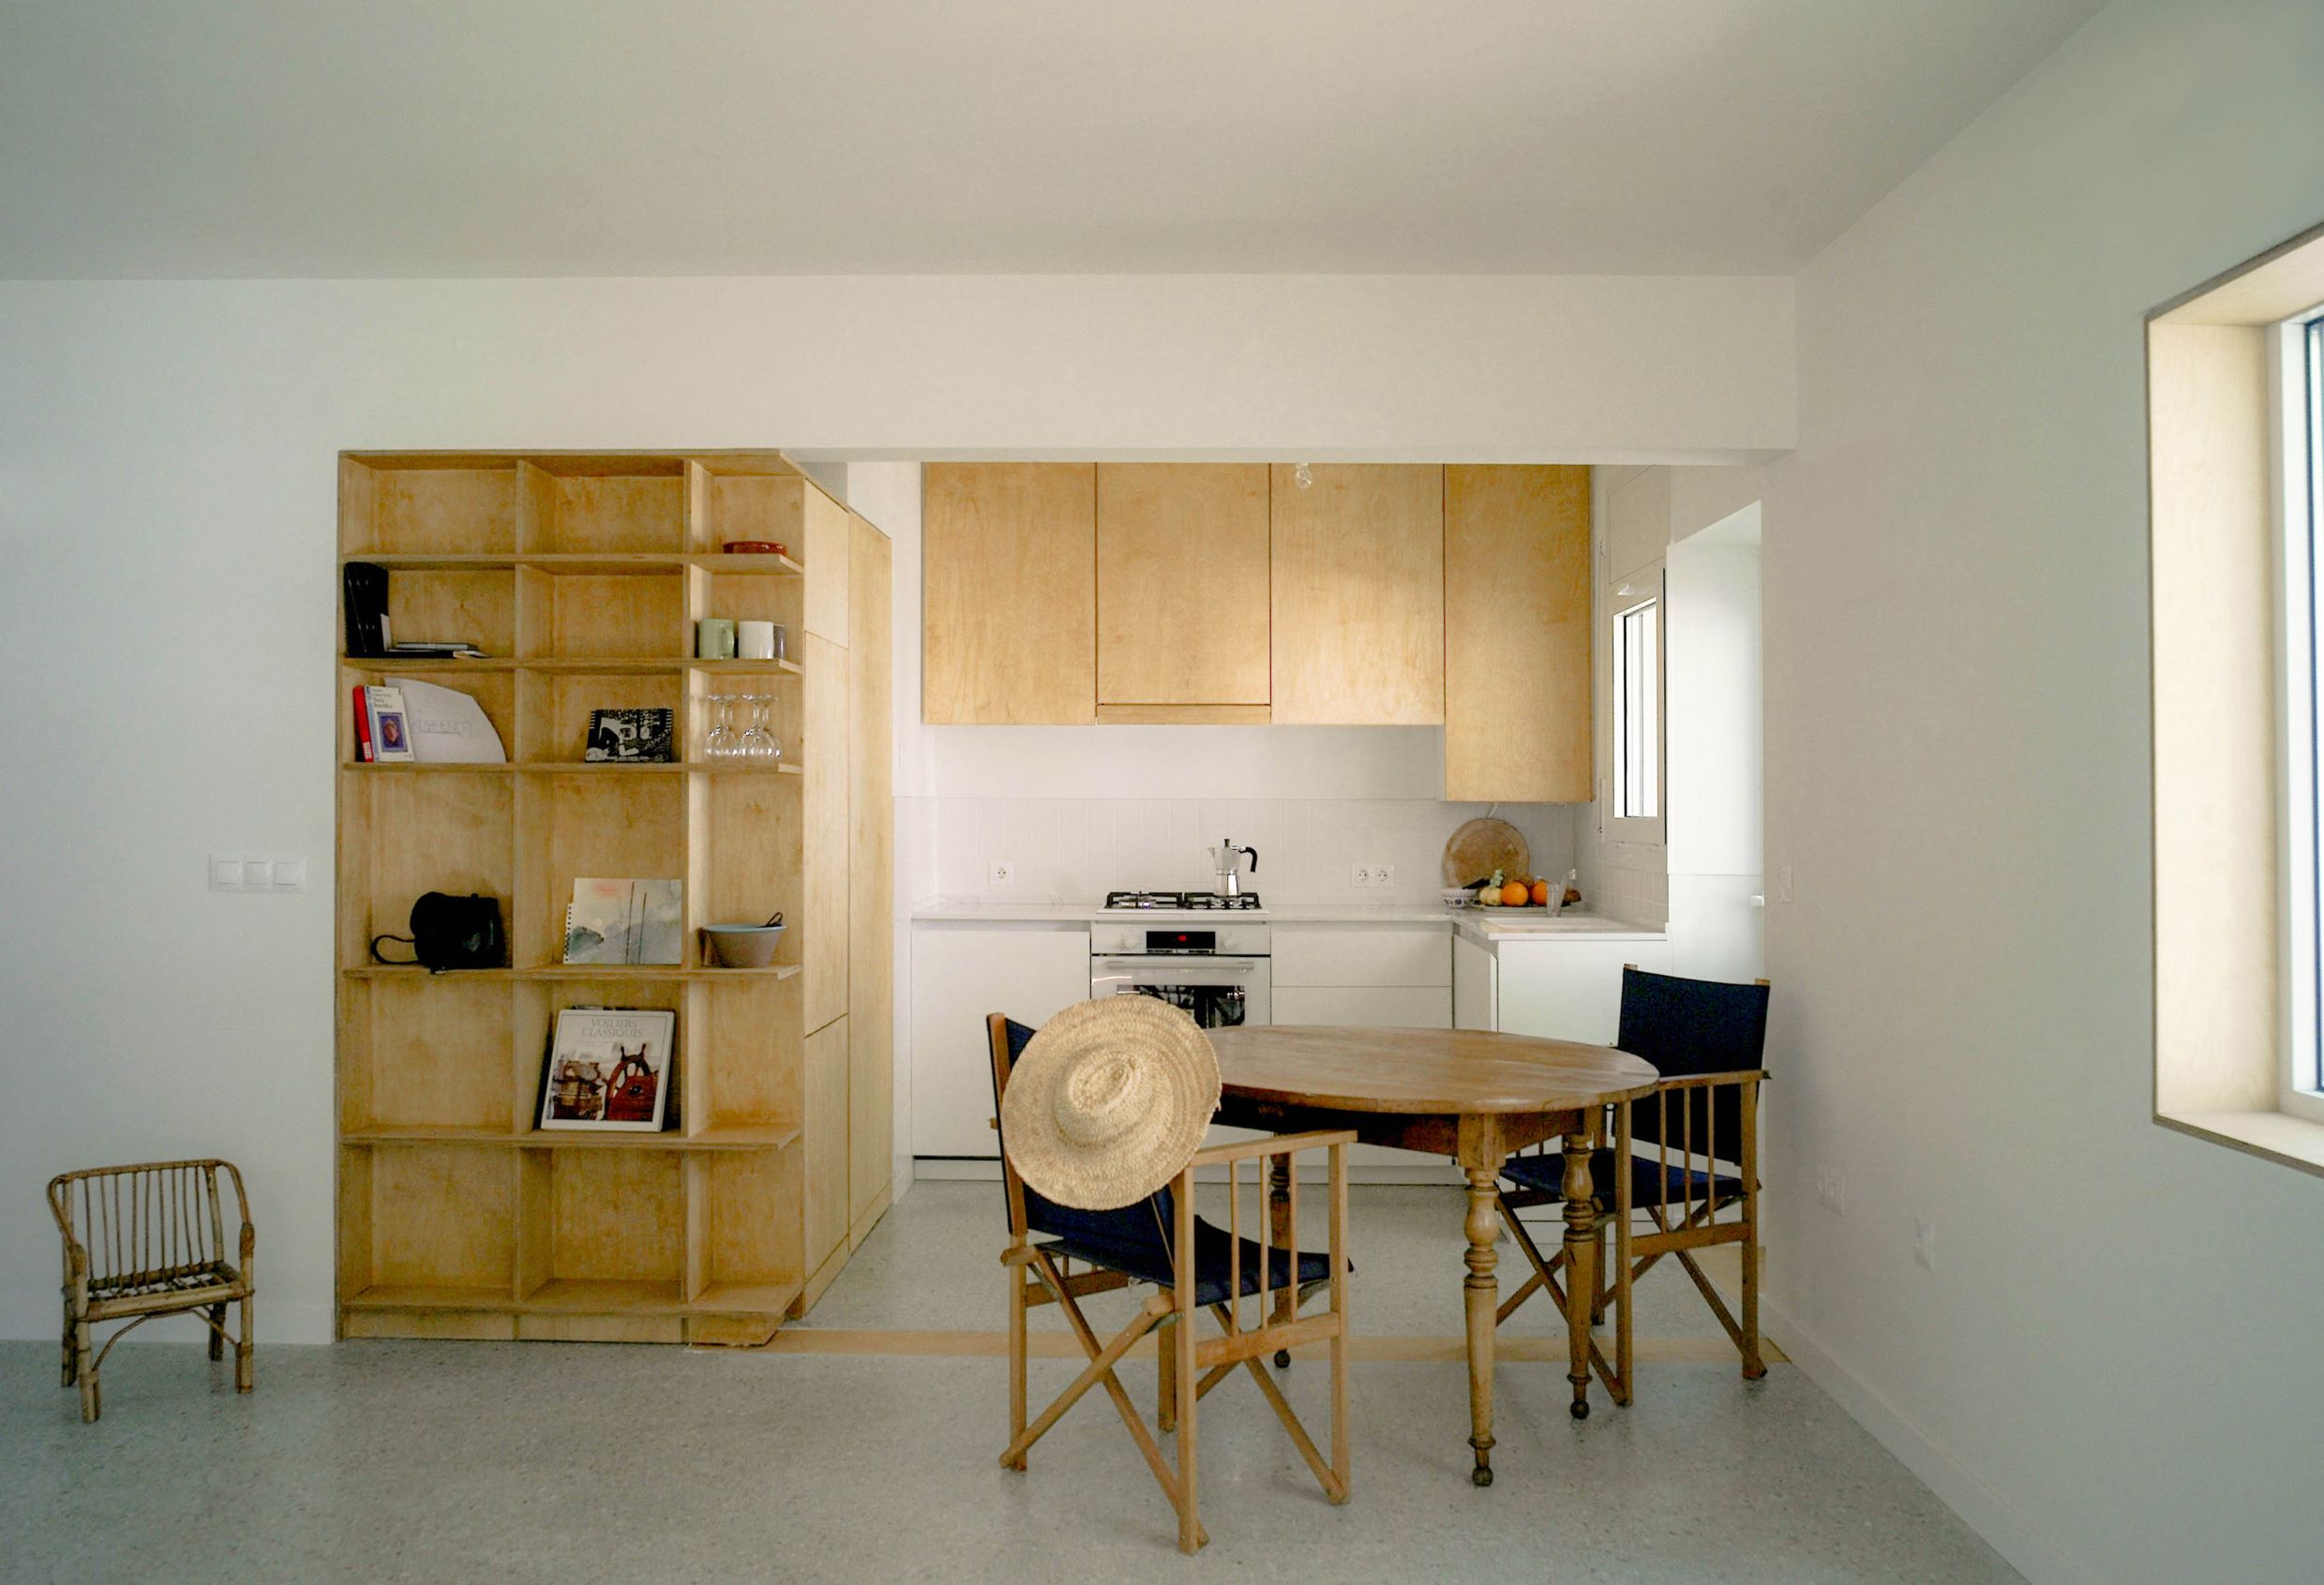 Photographie sur la cuisine de l'appartement. Différents meubles bois